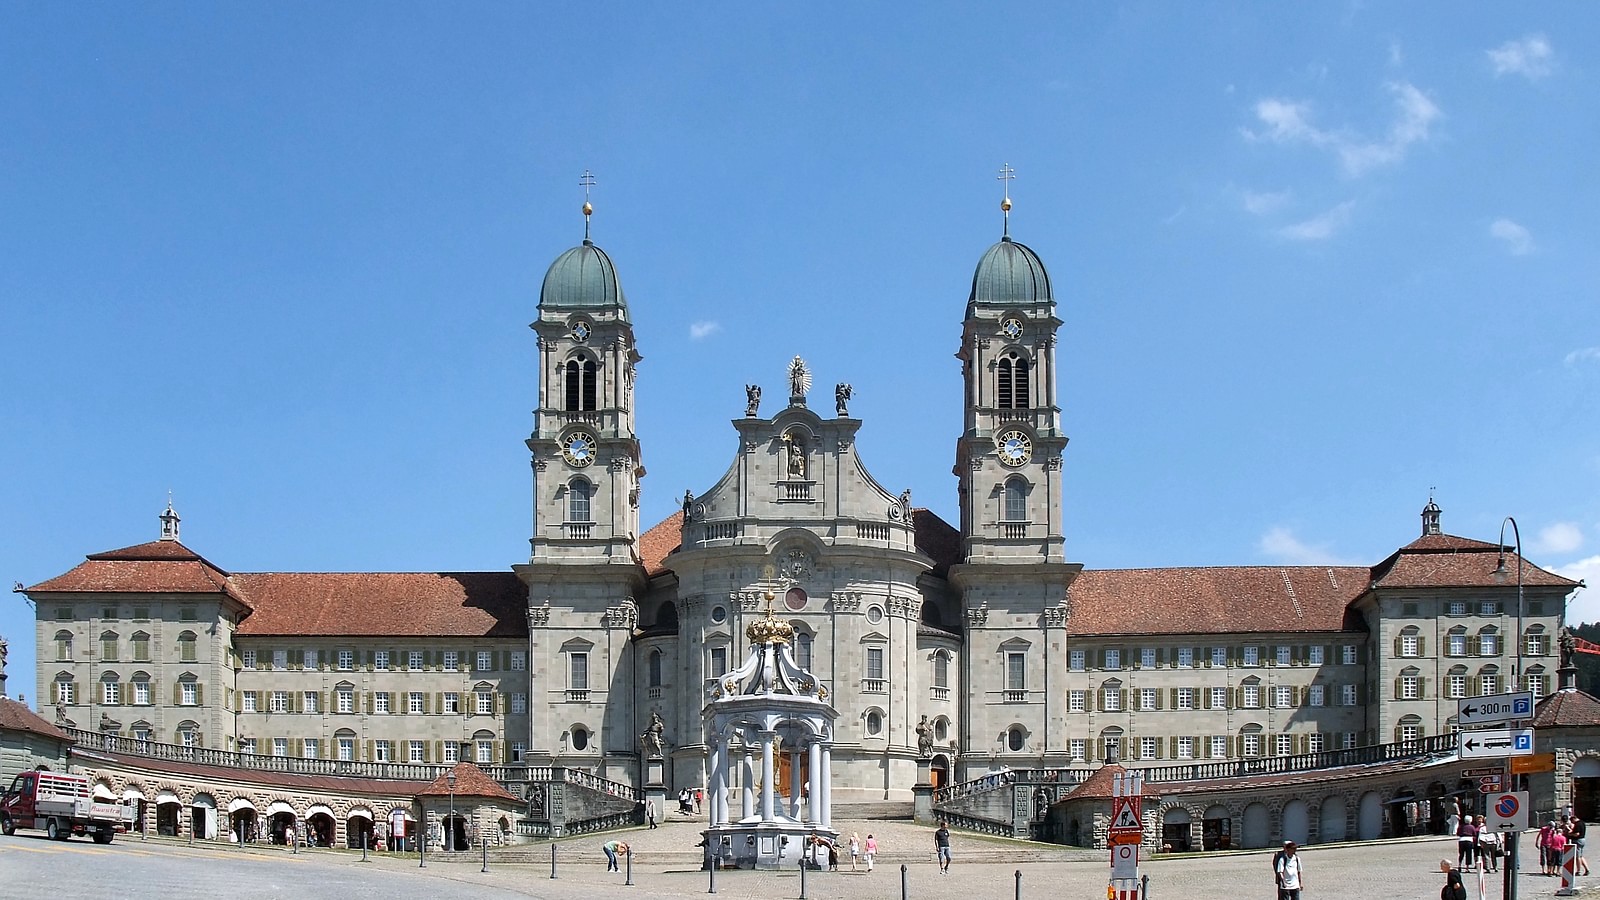 Germany, Austria, Switzerland & Northern Italy Catholic Pilgrimage